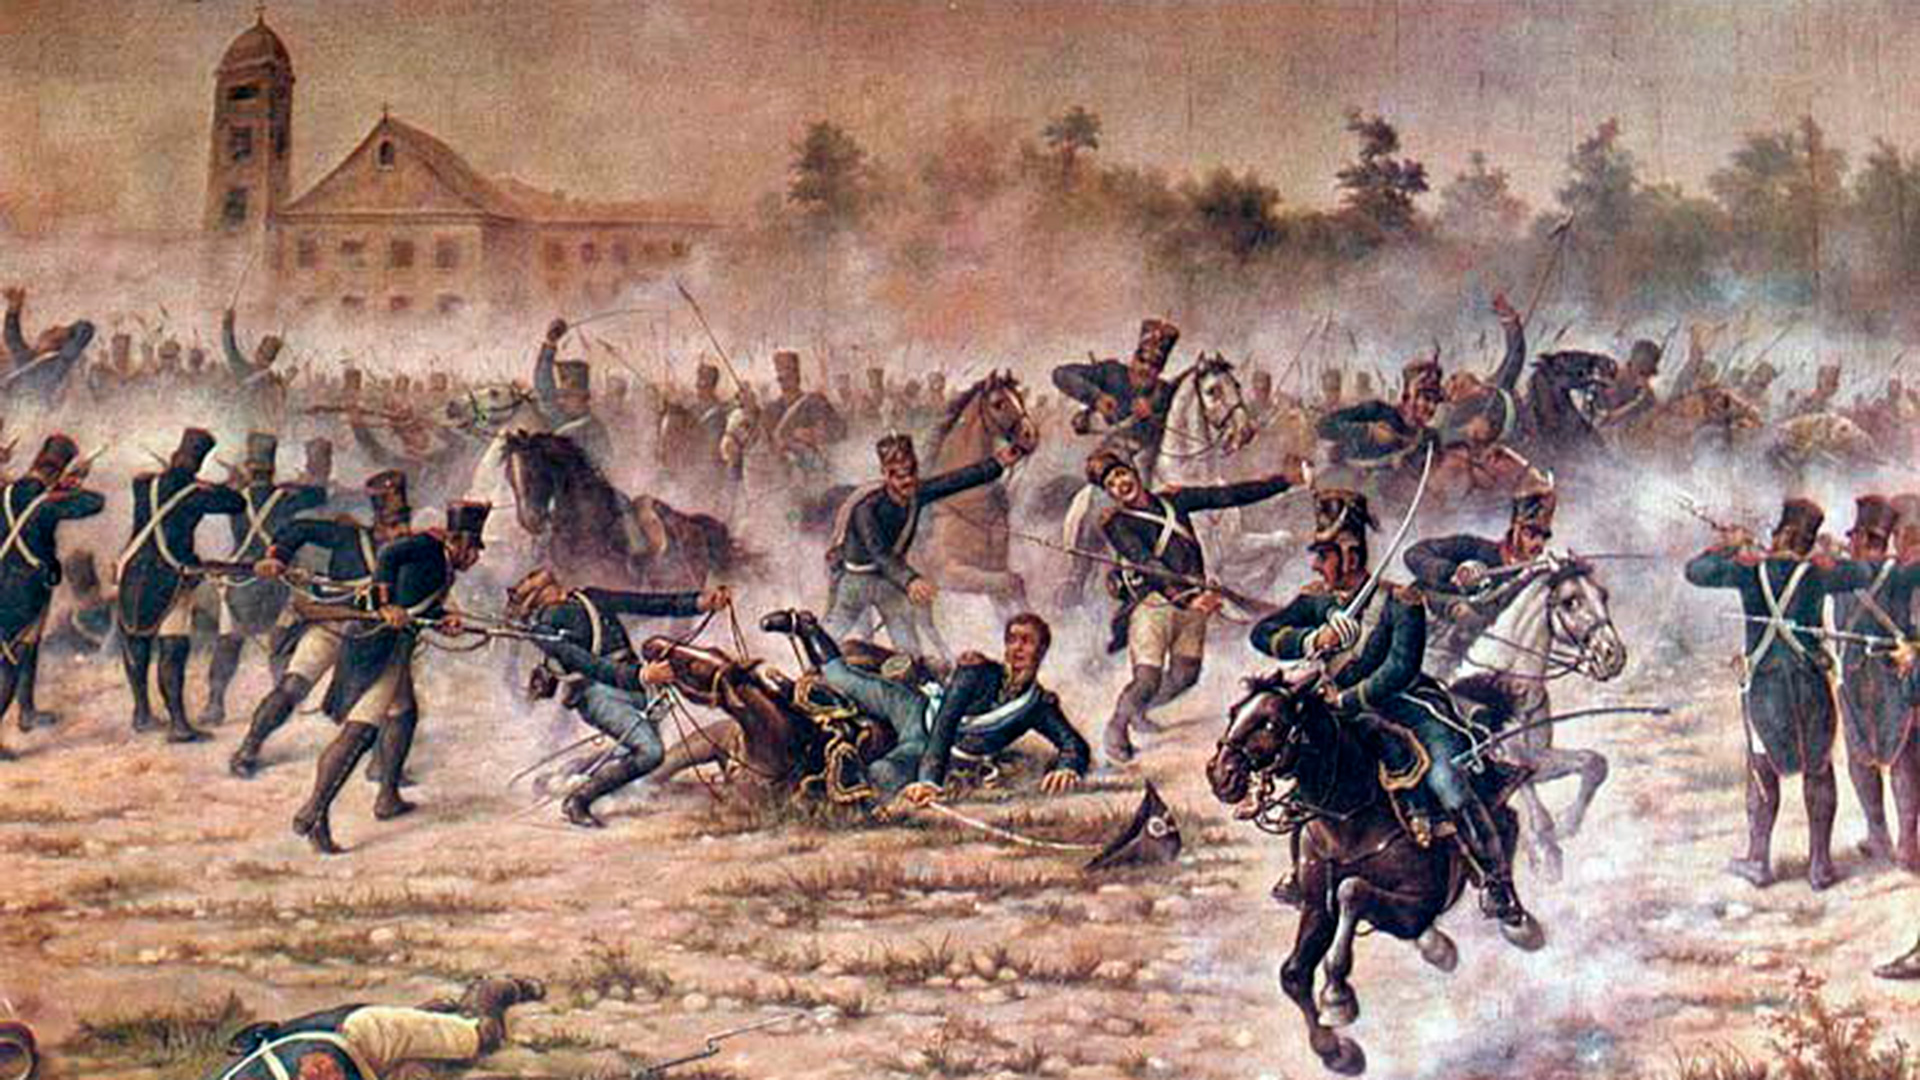 Una de las escenas más dramáticas: San Martín aprisionado por el cuerpo de su caballo muerto, y un enjambre de españoles alrededor